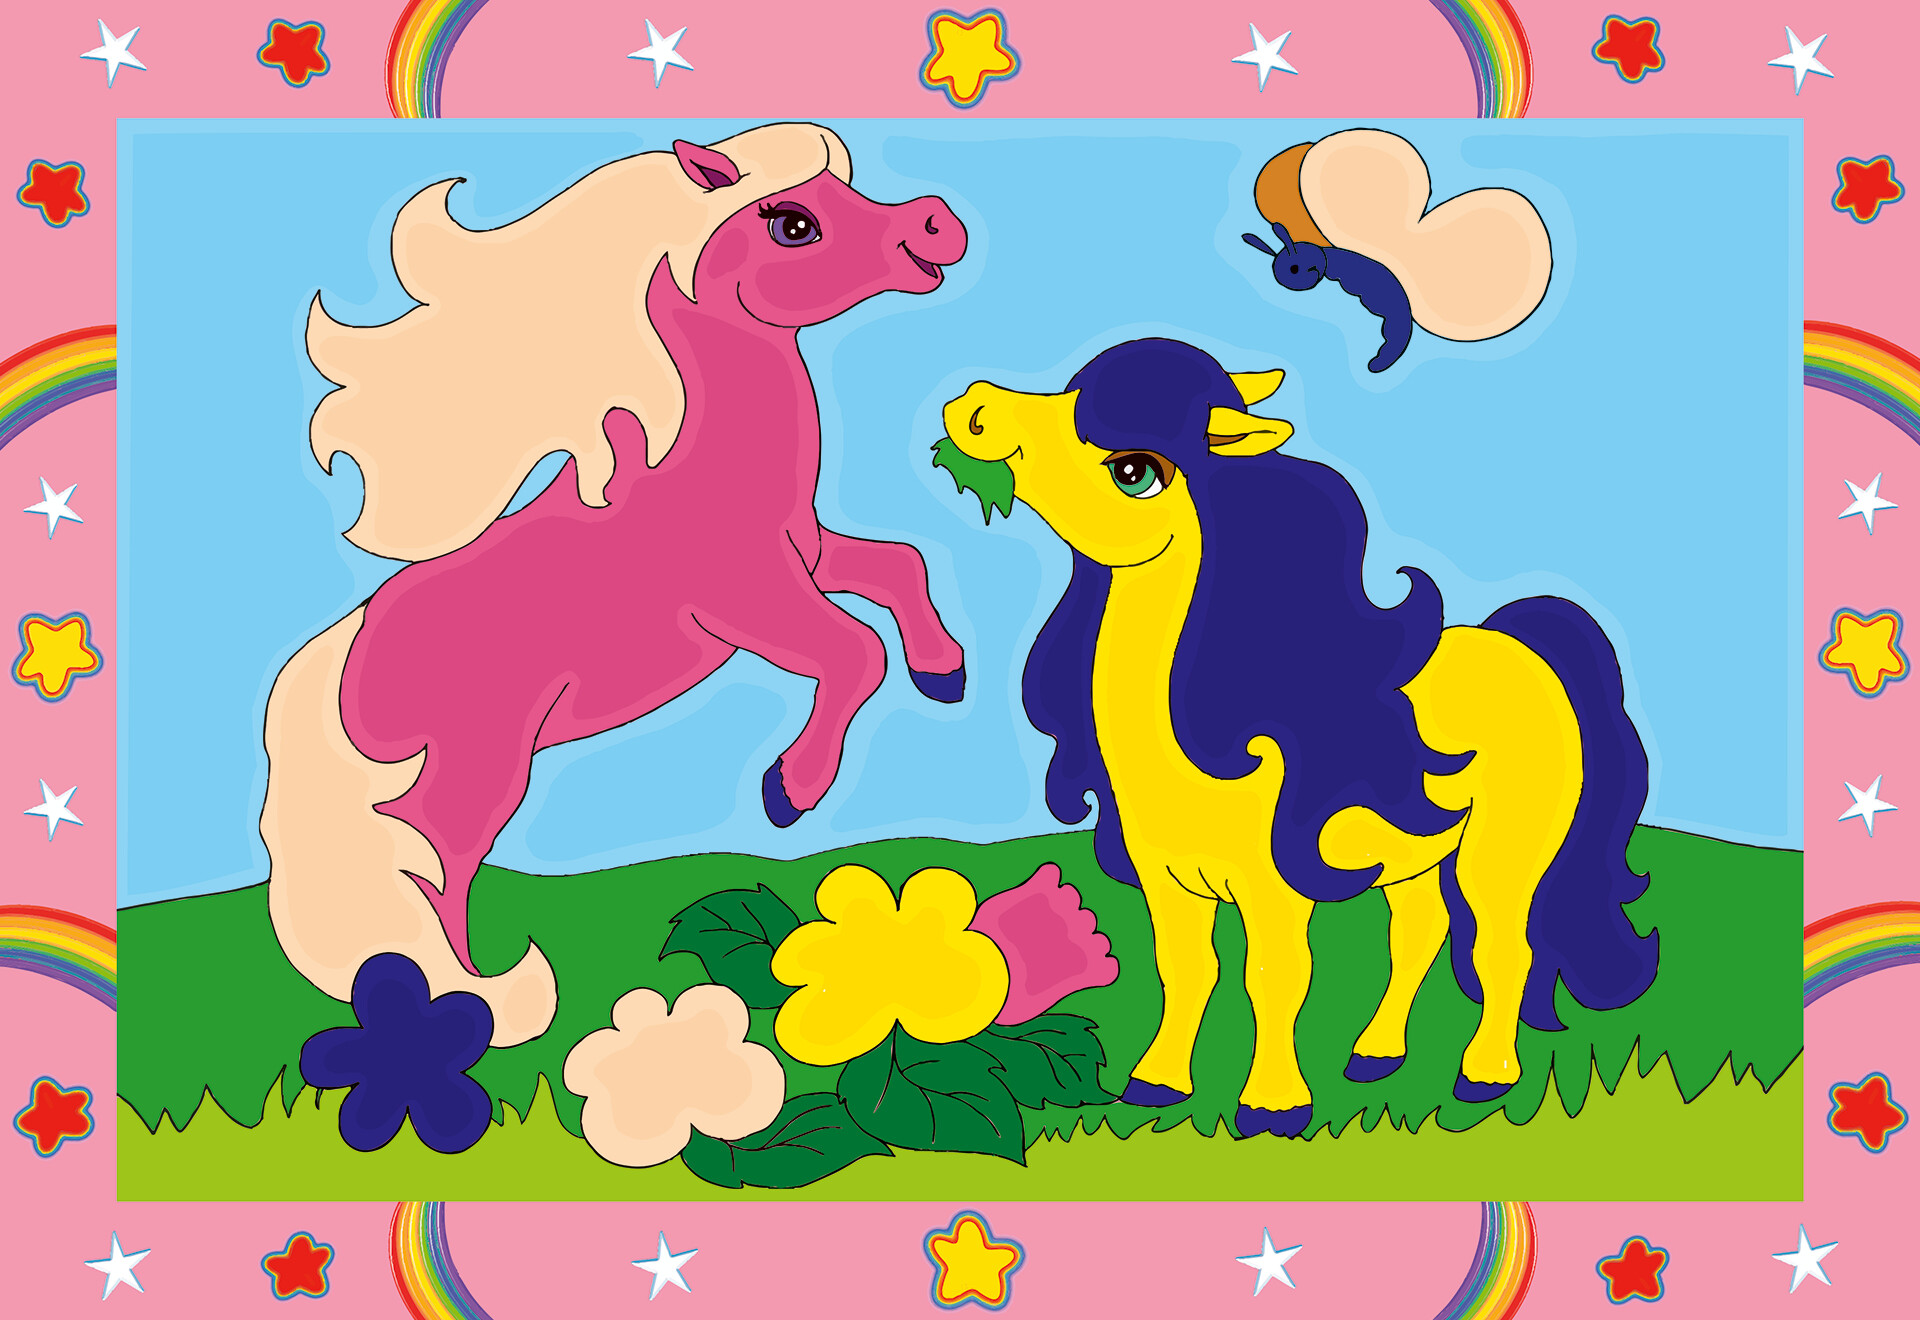 Ravensburger  - creart serie junior, pony, kit dipingere con i numeri, contiene 2 tavole prestampate, pennello, colori, gioco creativo per maschi e femmine dai 5+ anni di età - RAVENSBURGER